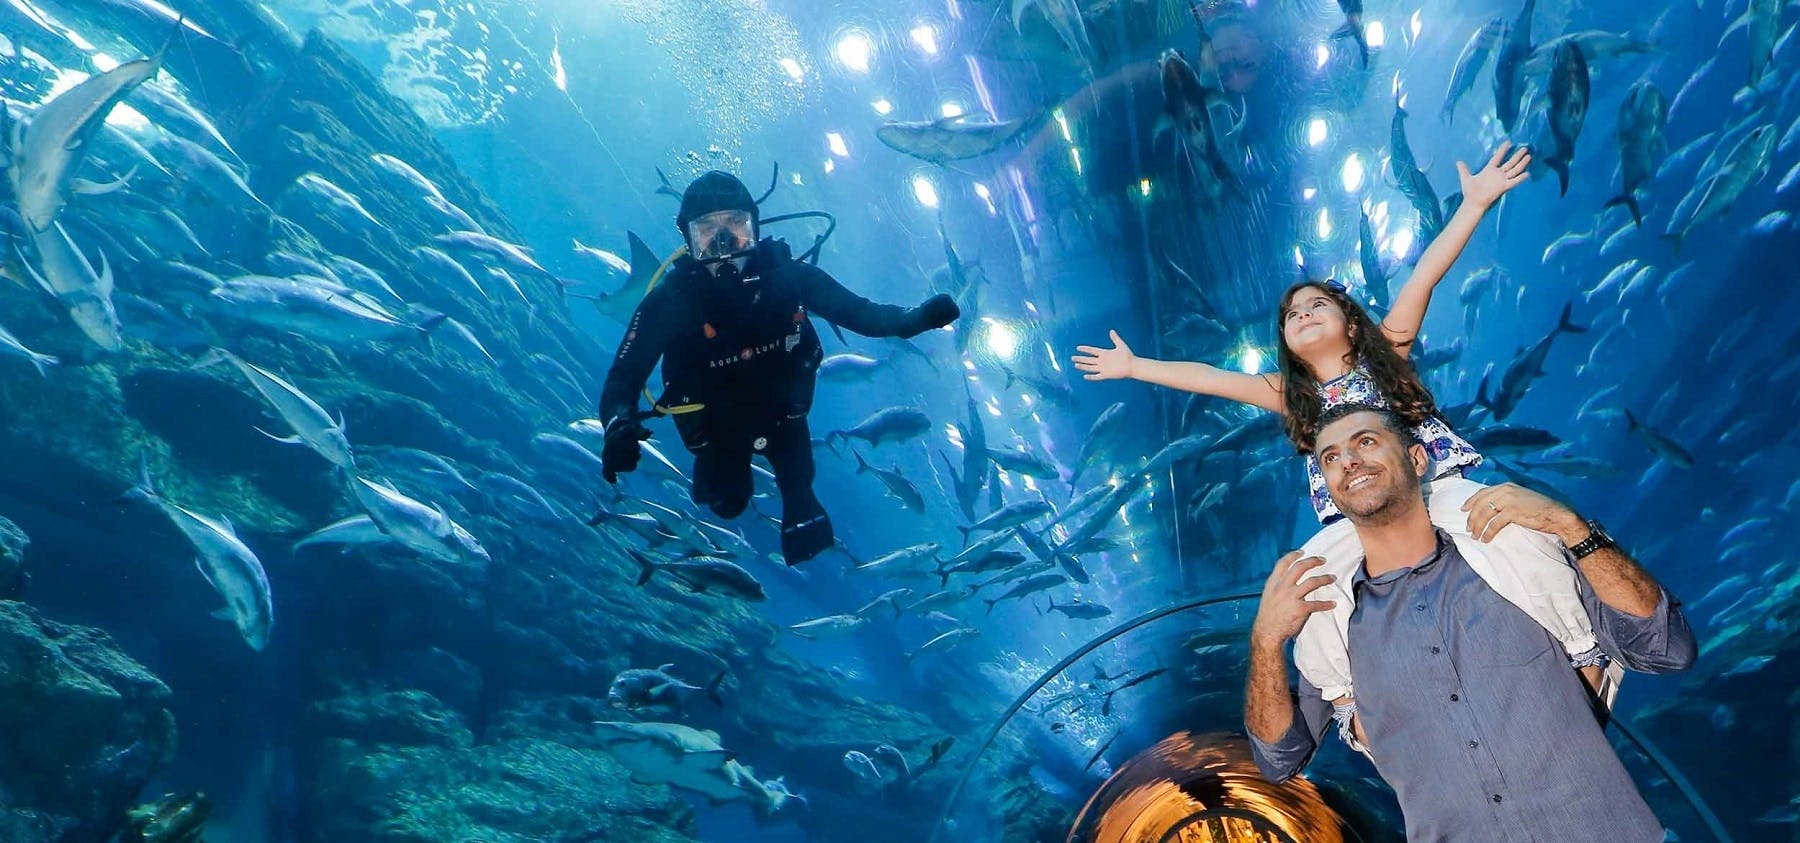 Dubai Aquarium and Underwater Zoo with penguin cove nursery Musement